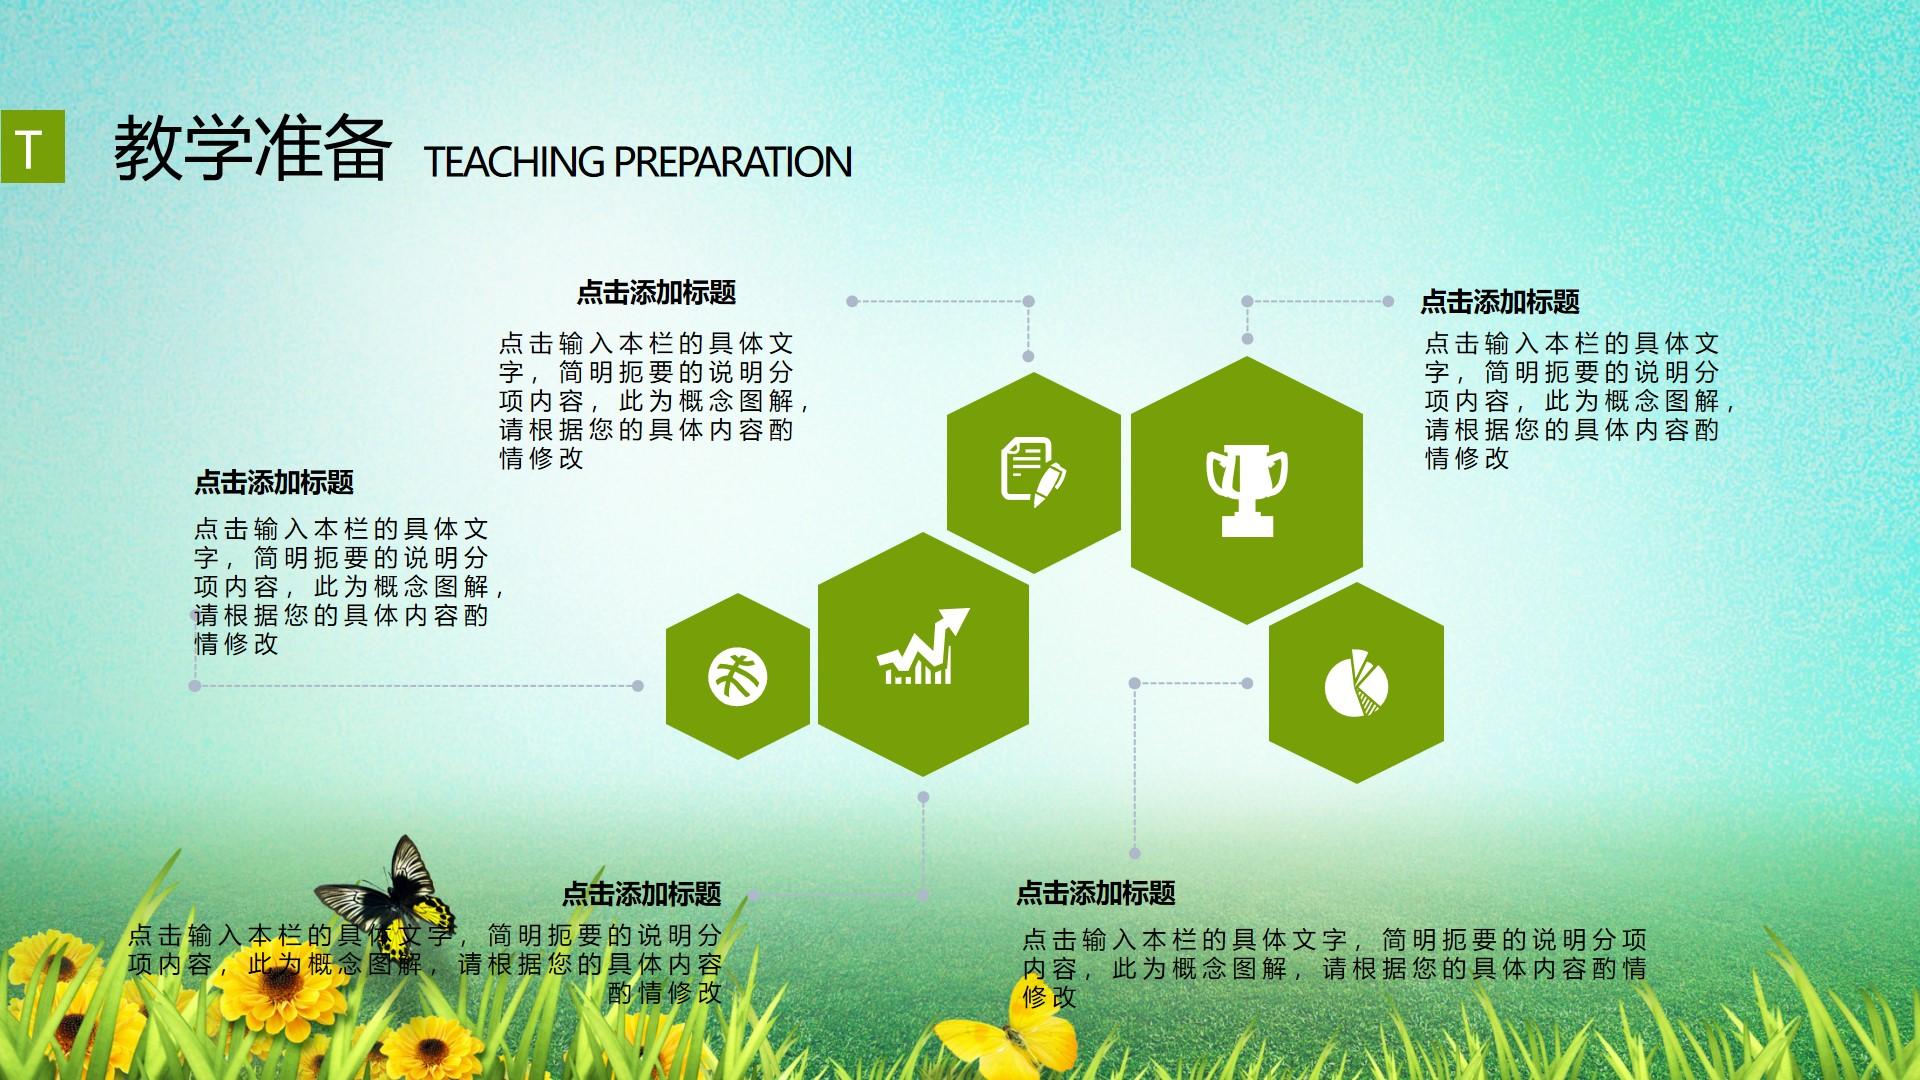 教育教学青色绿色卡通实景简洁teaching preparation云素材PPT模板1672659800917